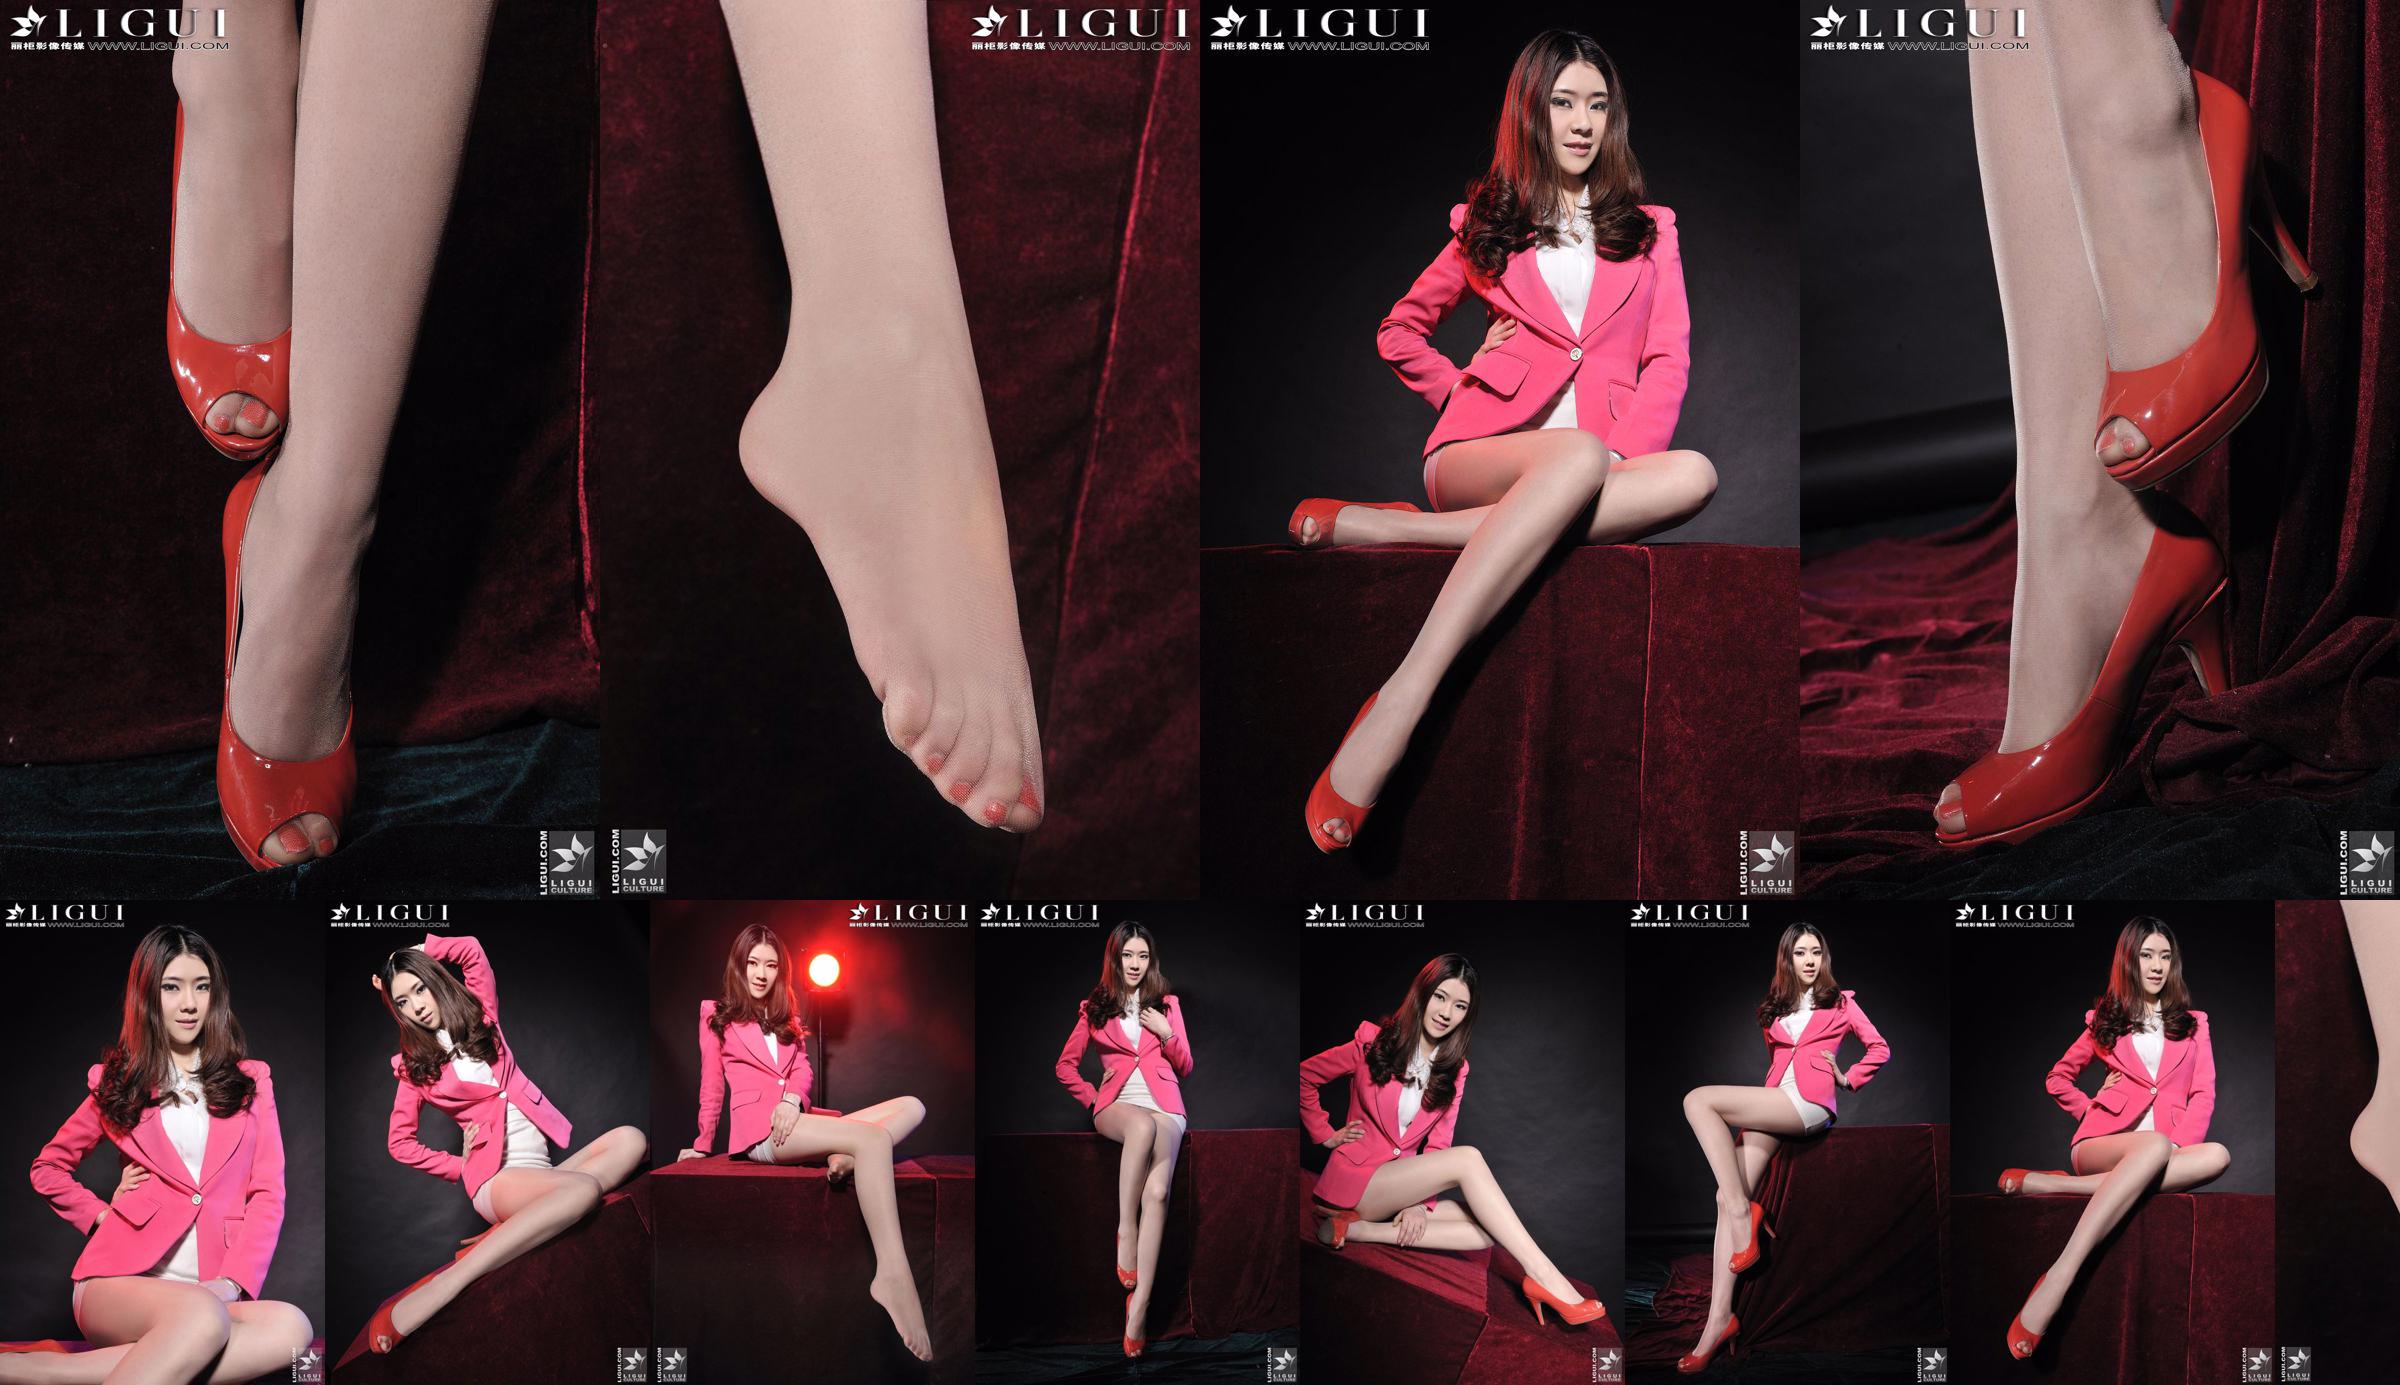 นางแบบ Chenchen "สาวส้นสูงสีแดง" [丽柜 LiGui] รูปถ่ายขาสวยและเท้าหยก No.644b98 หน้า 1